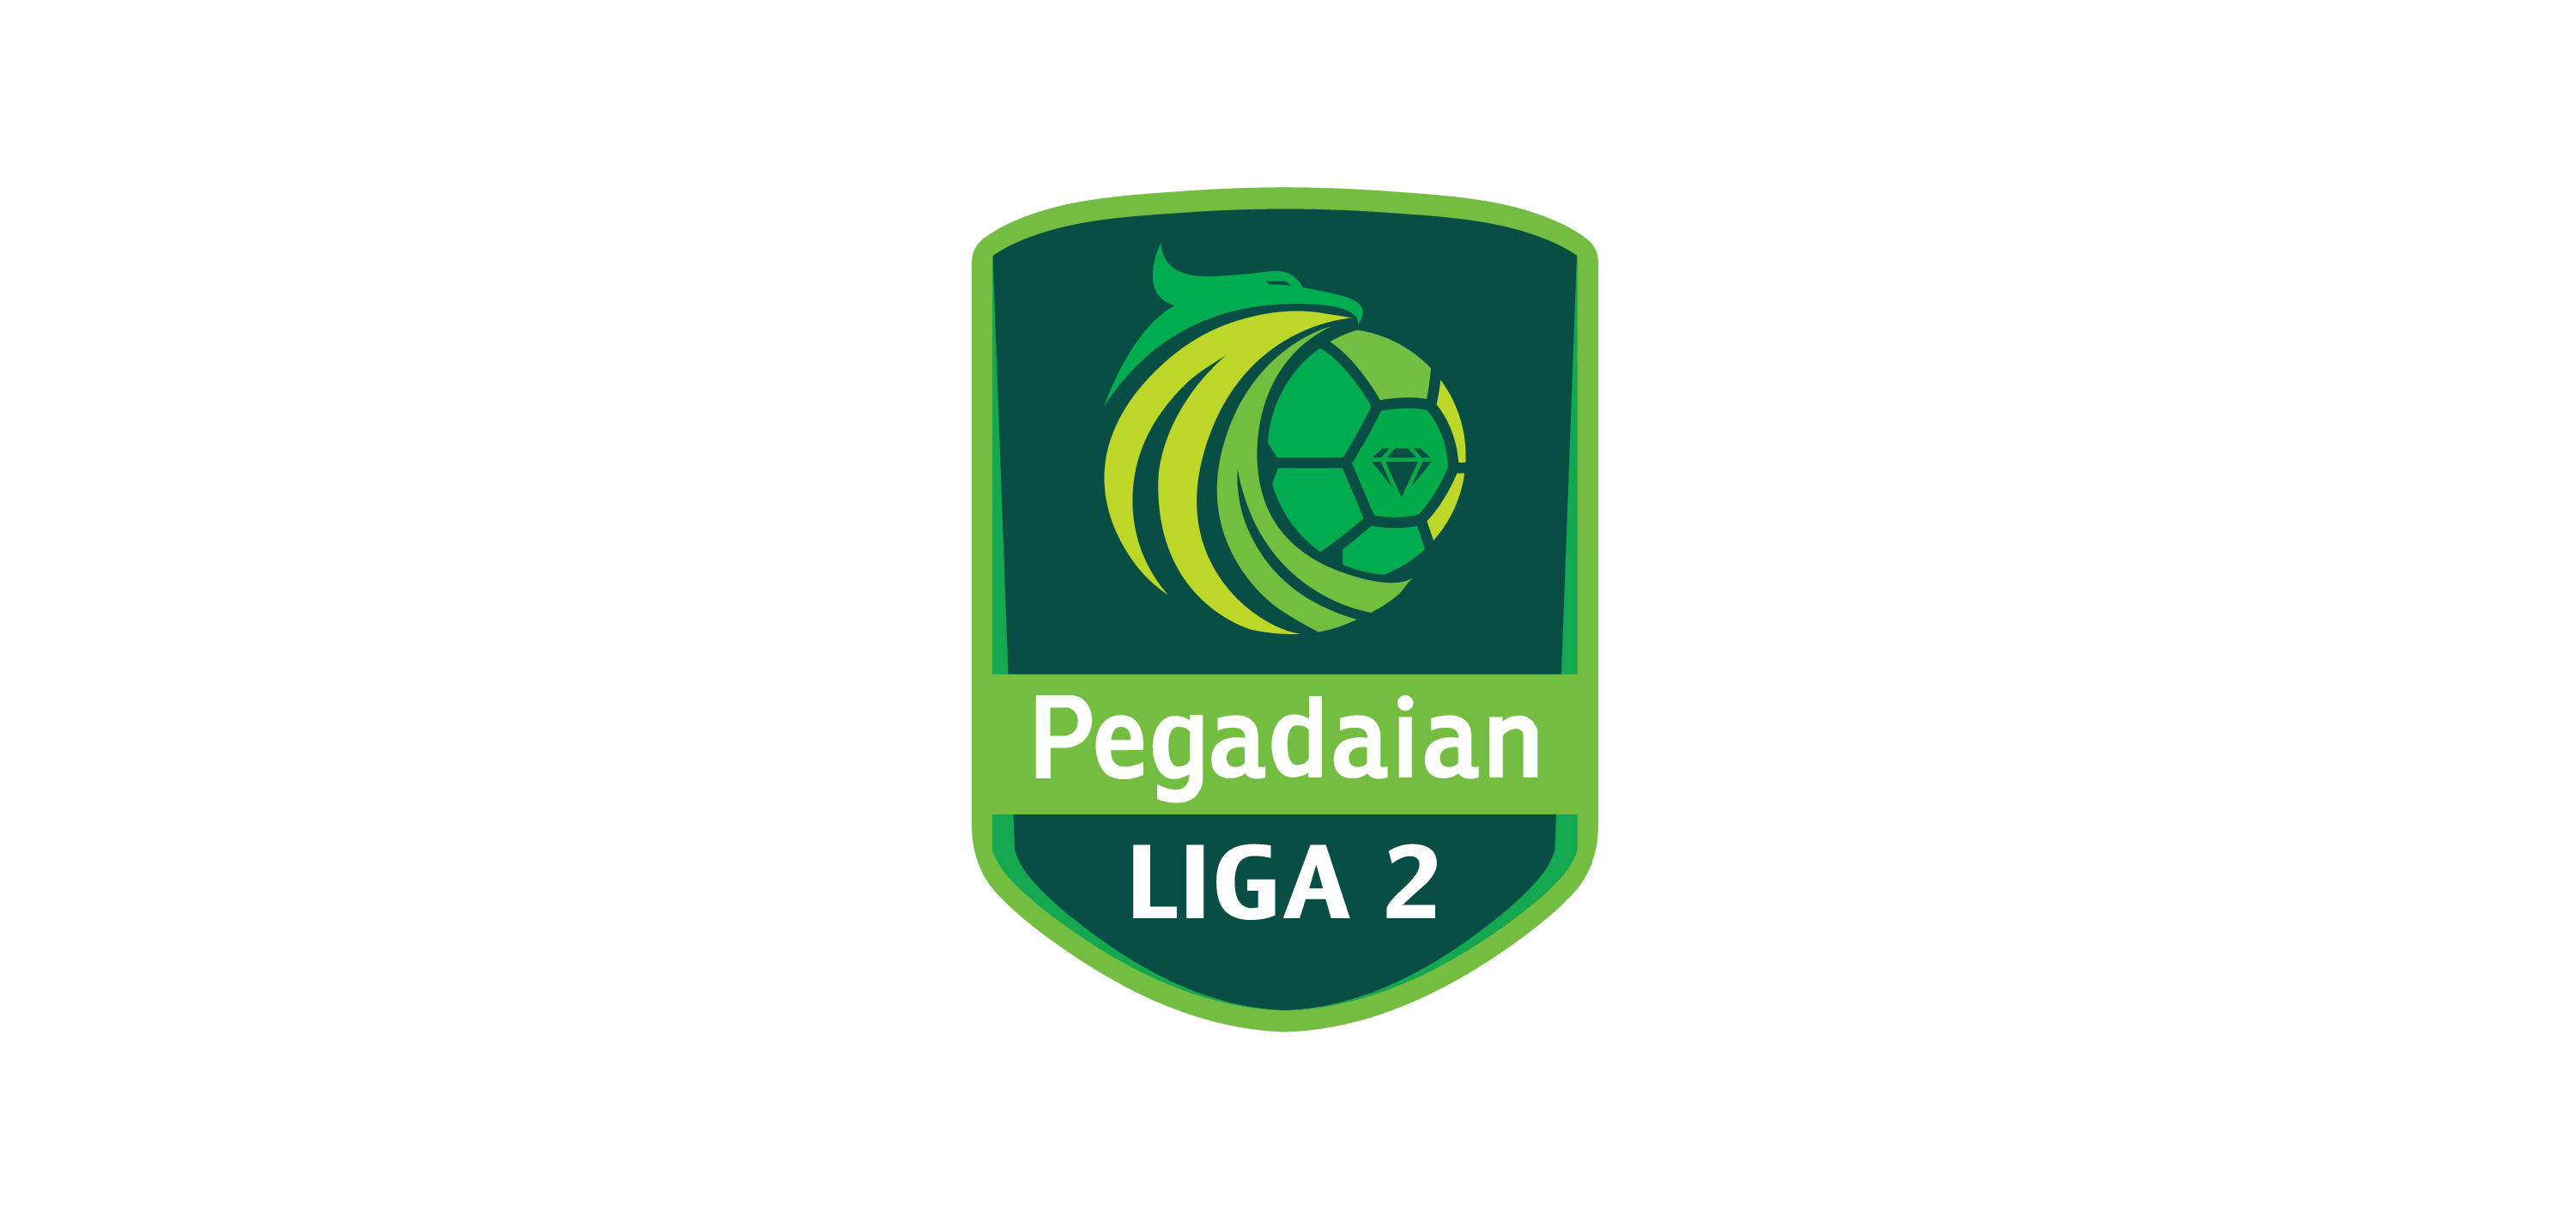 Pegadaian Liga 2 logo vector